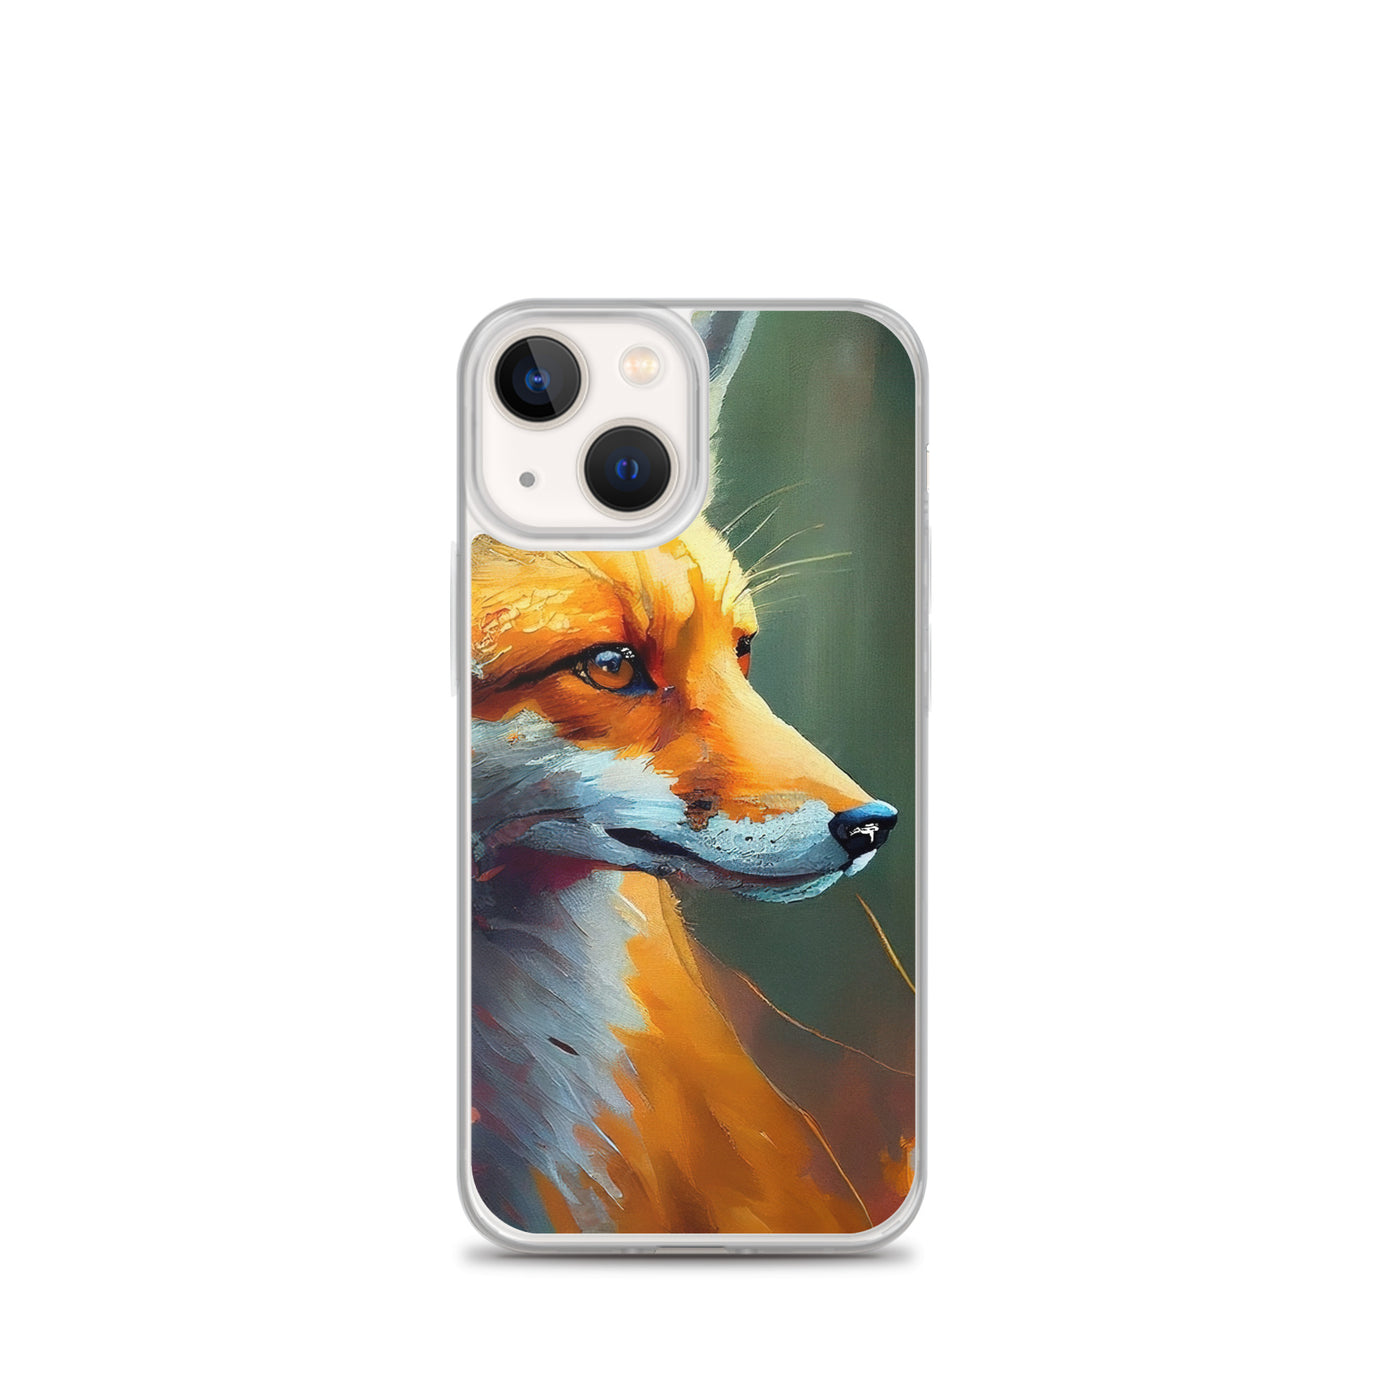 Fuchs - Ölmalerei - Schönes Kunstwerk - iPhone Schutzhülle (durchsichtig) camping xxx iPhone 13 mini